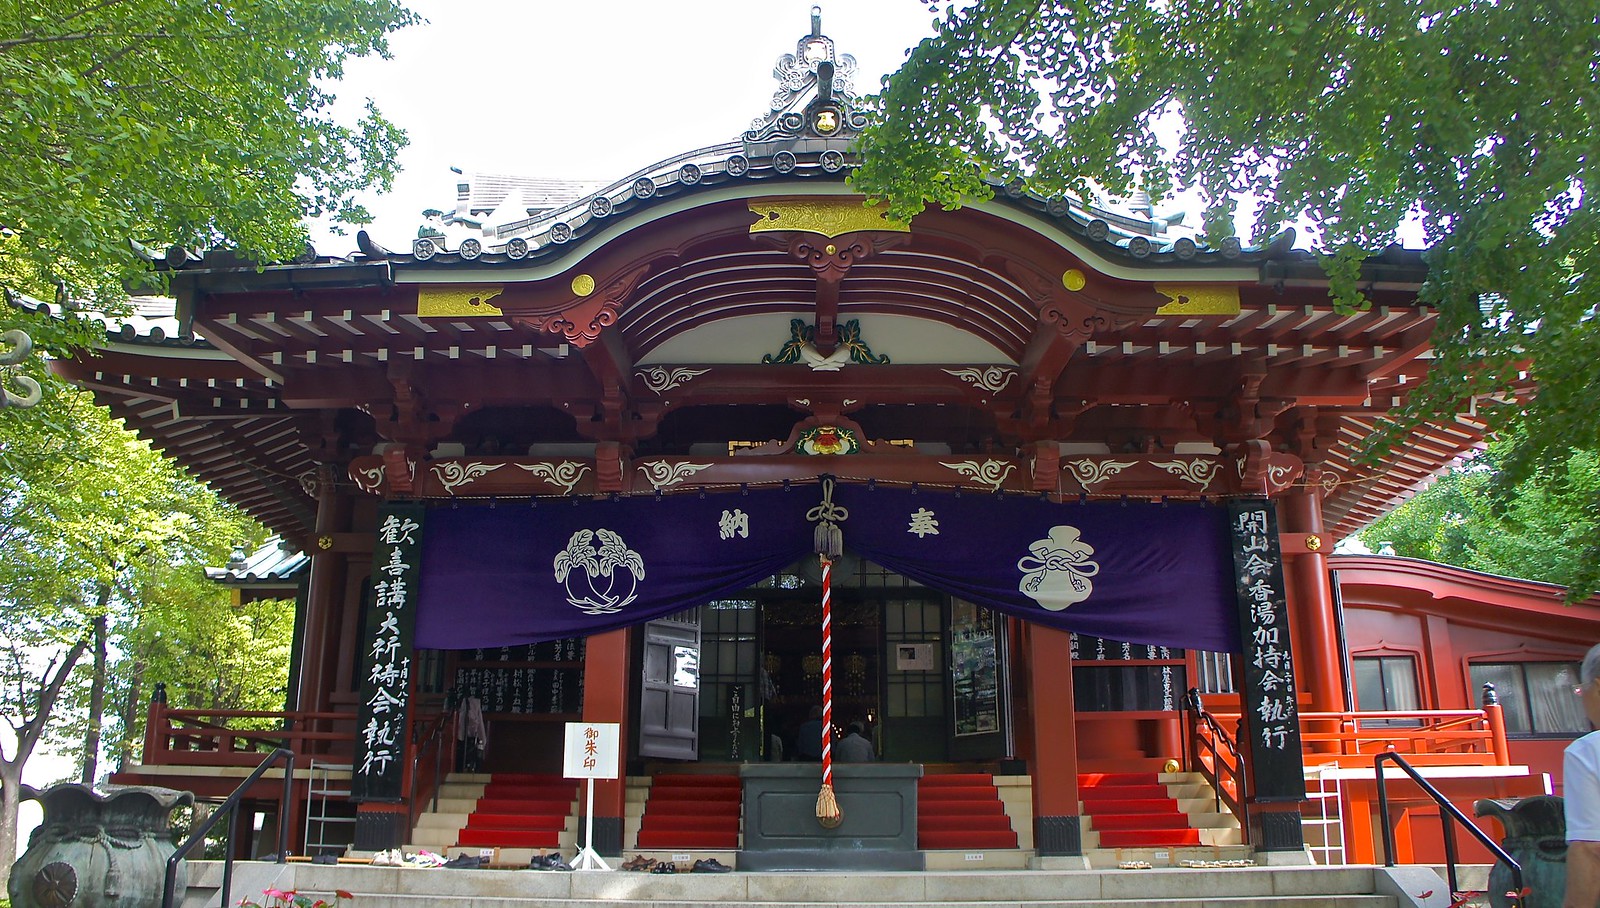 Ganesha Temple in Japan at Asakusa